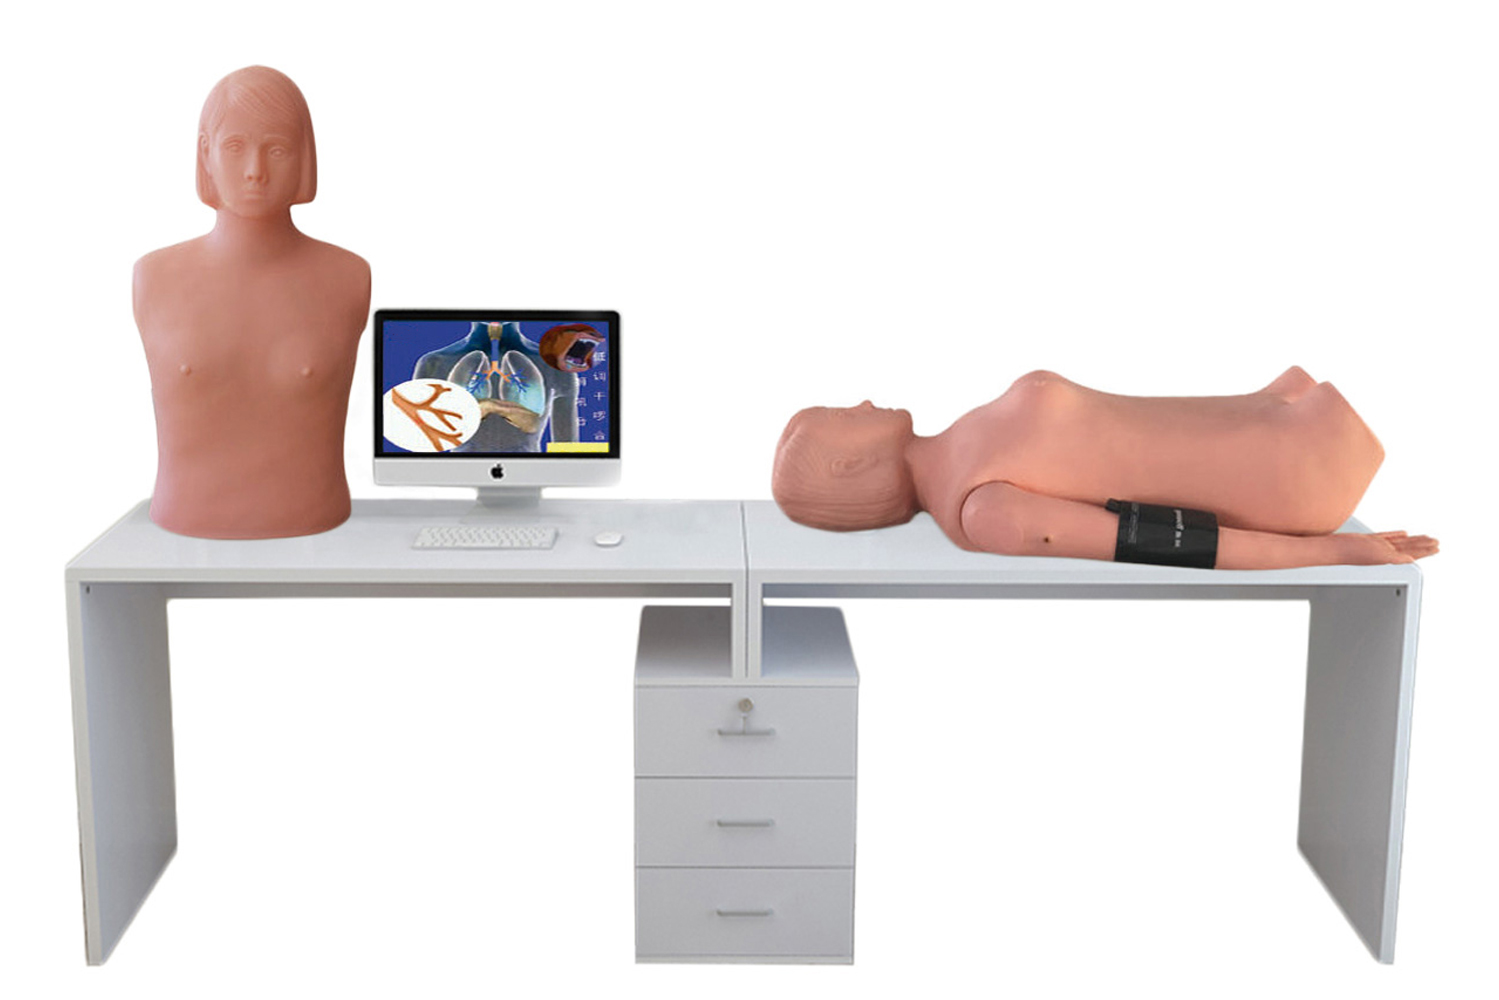 HD/XF9000A 智能型网络多媒体胸腹部检查教学系统